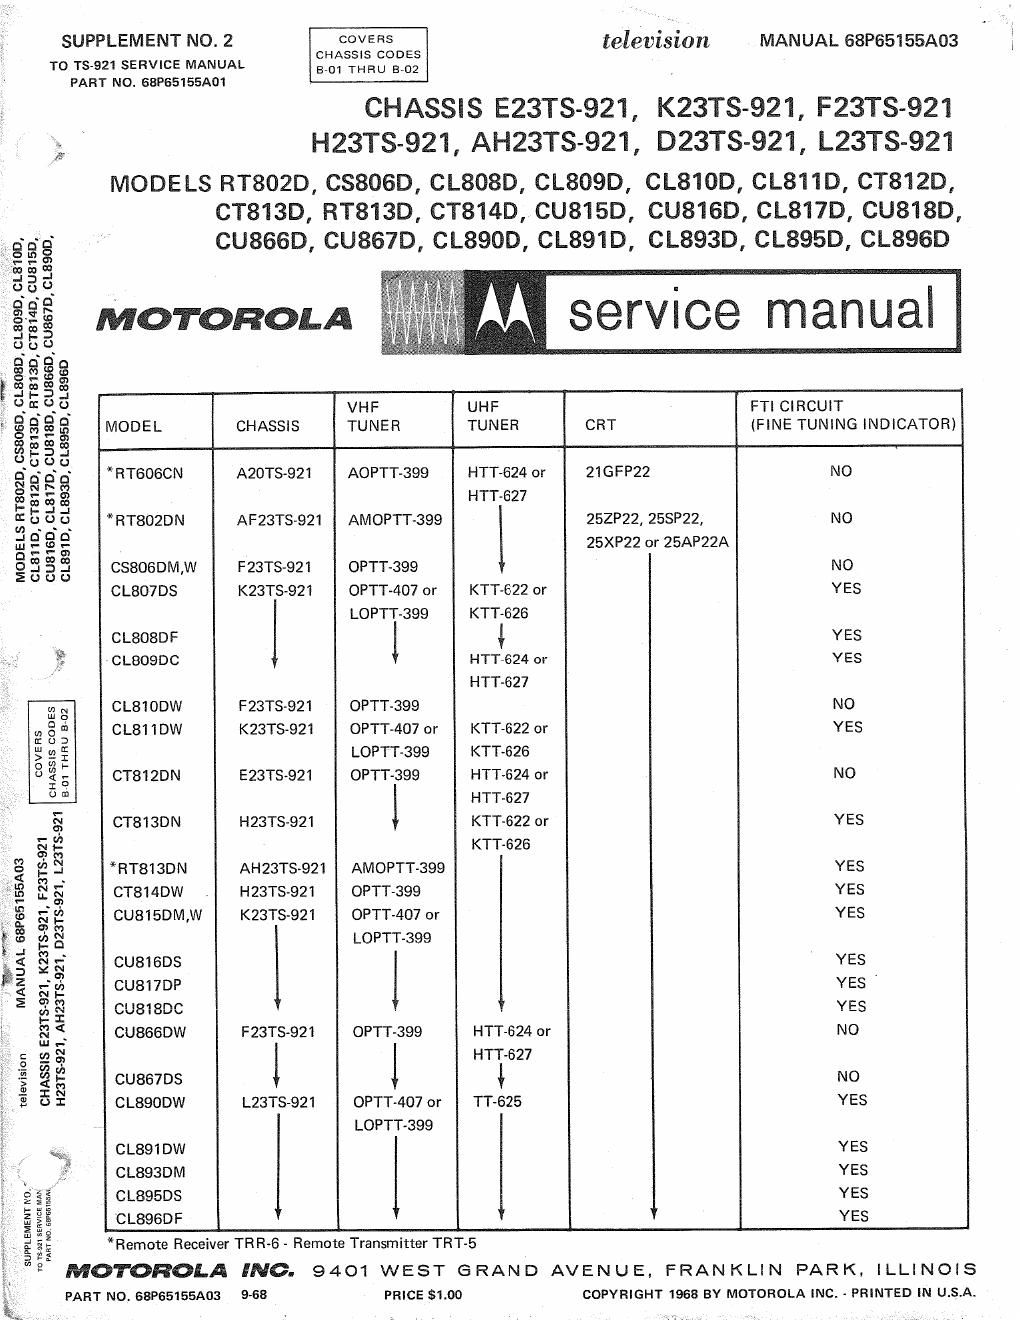 motorola cu 815 d service manual